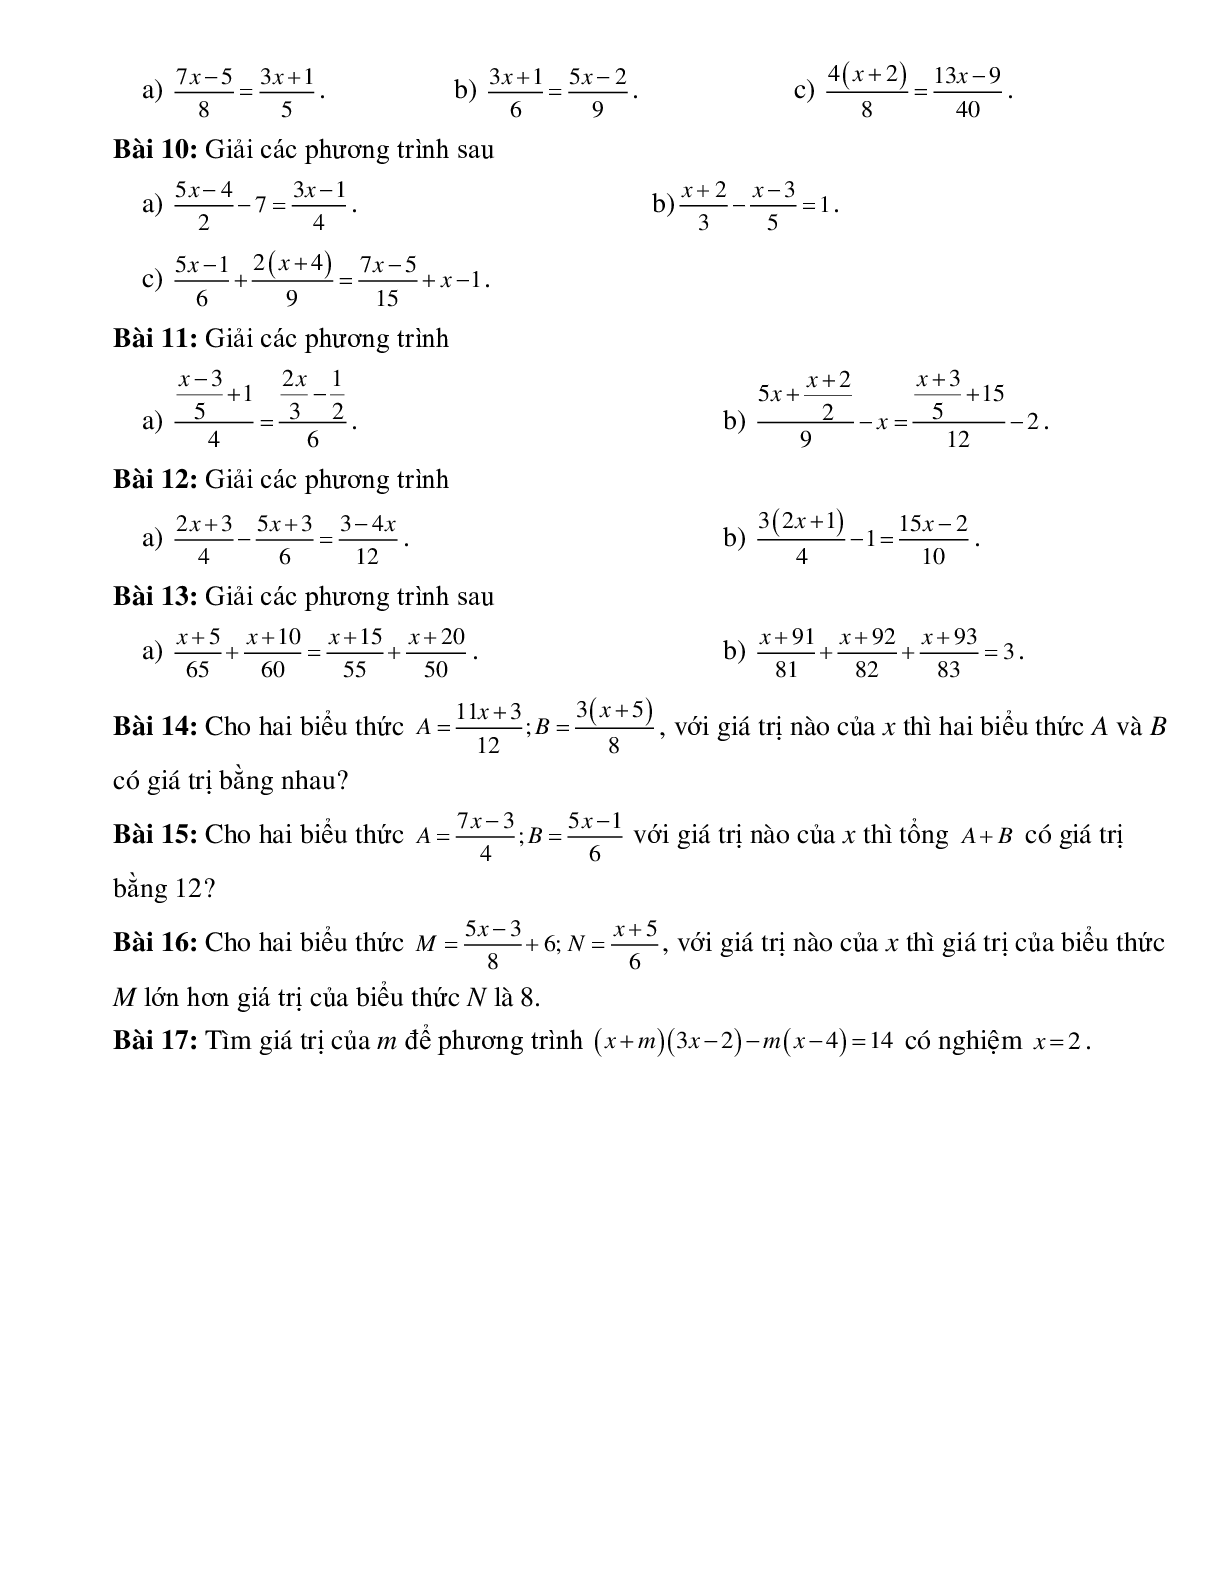 Phương trình đưa được về dạng ax + b = 0 (trang 2)